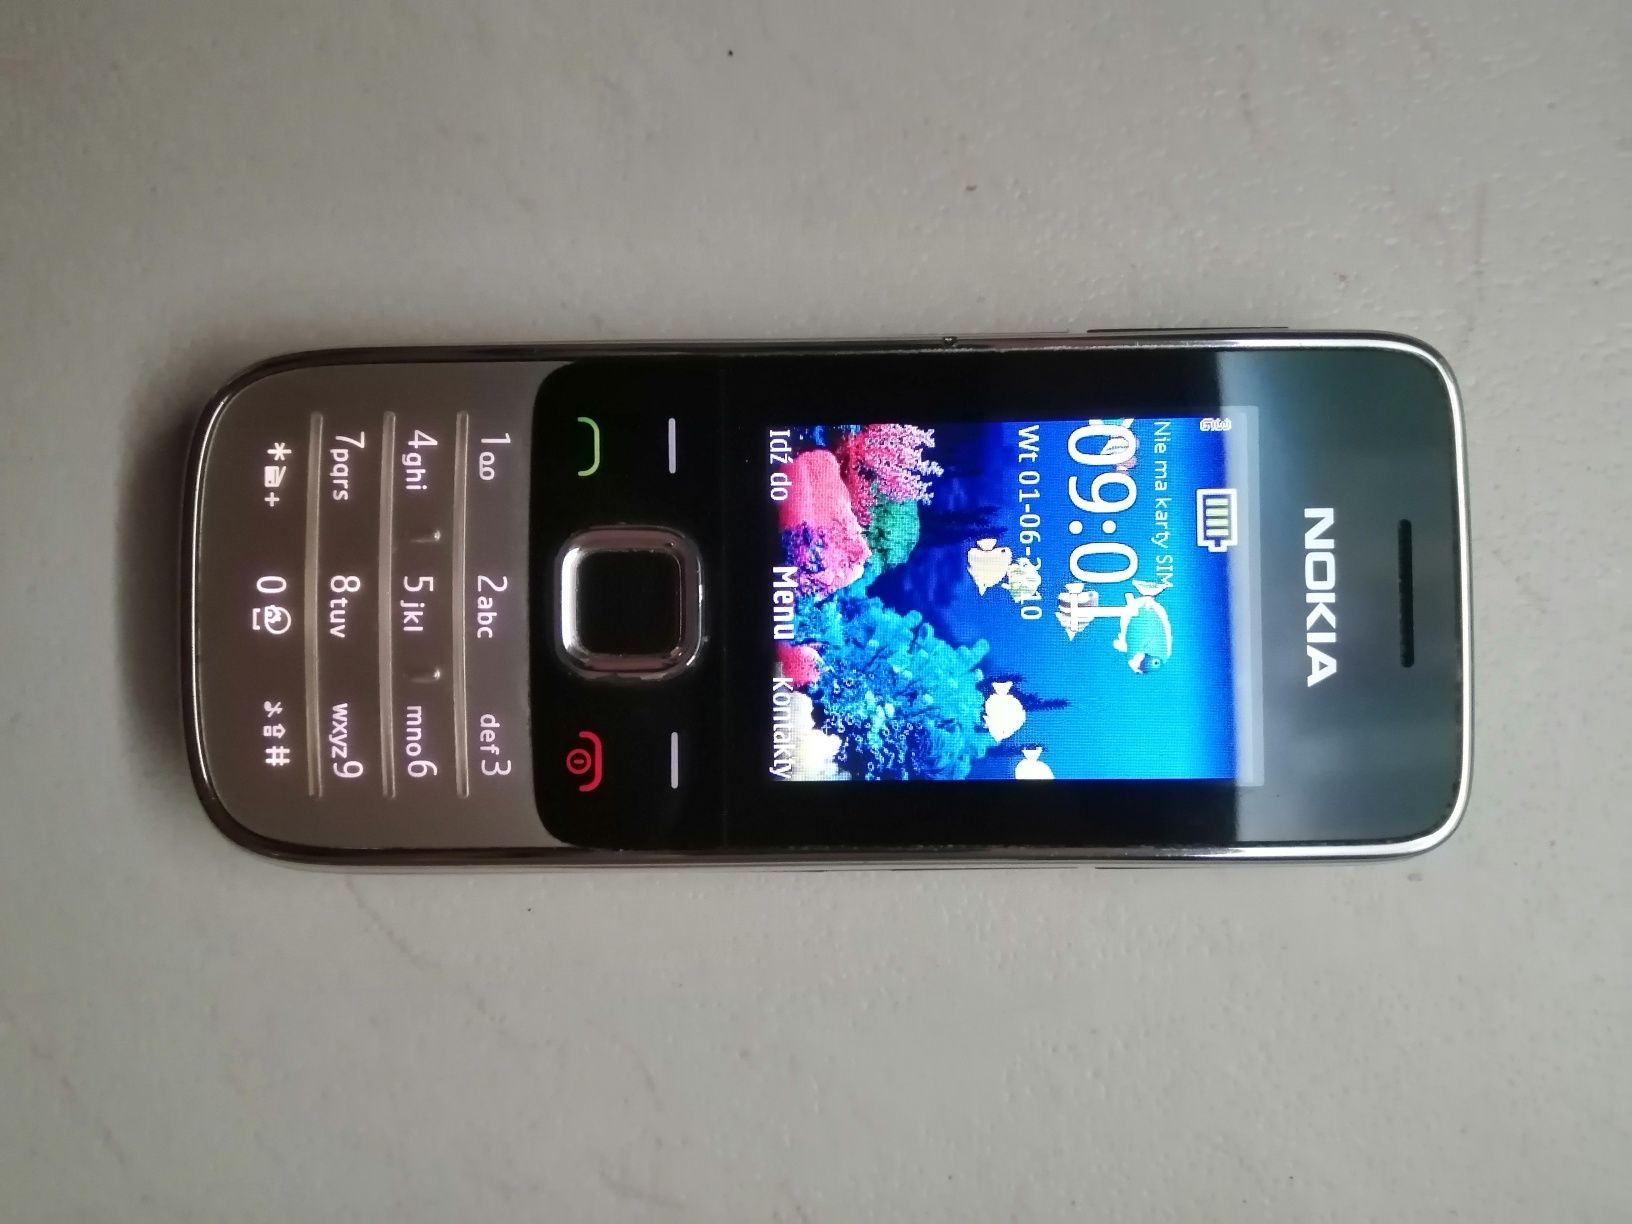 Nokia 2730c sprawna